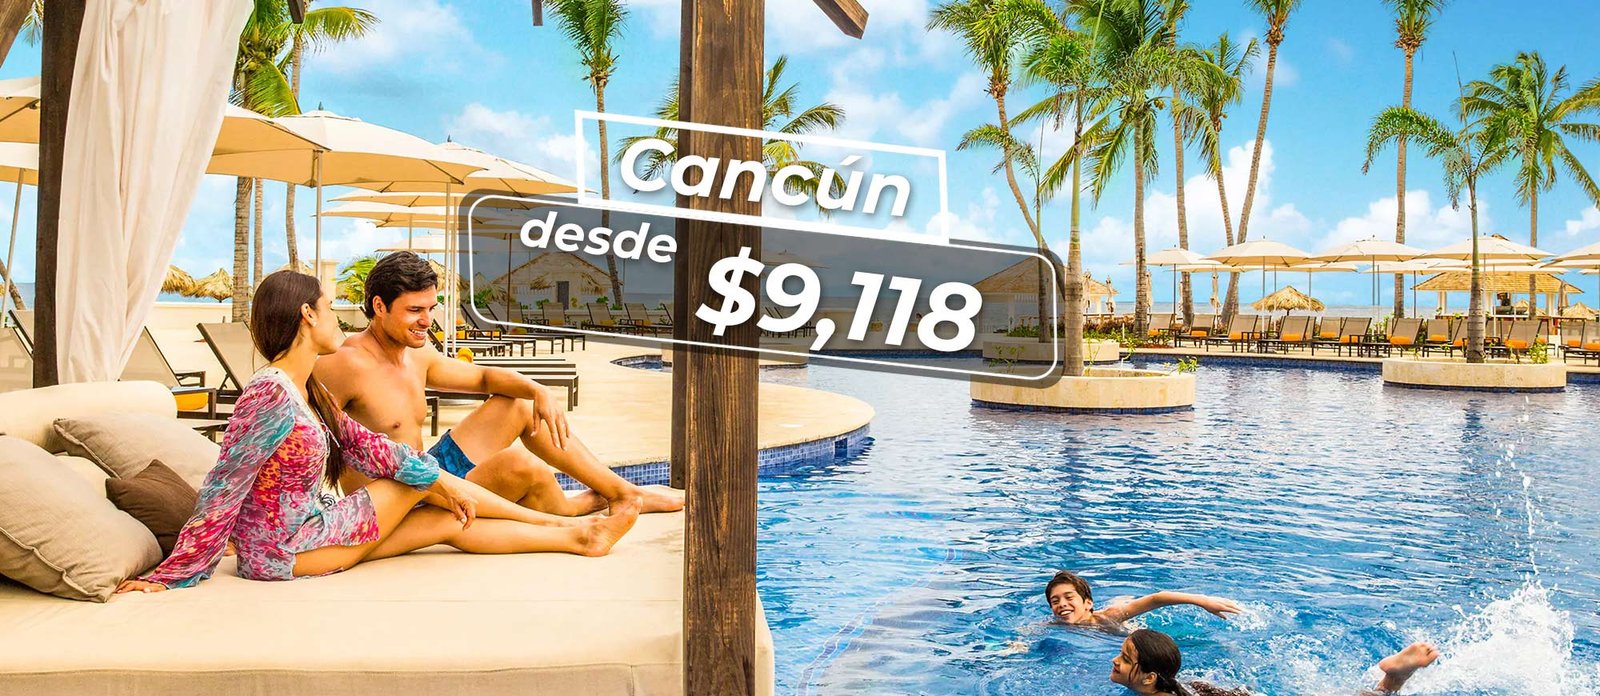 hoteles en cancun todo ilcluido ofertas